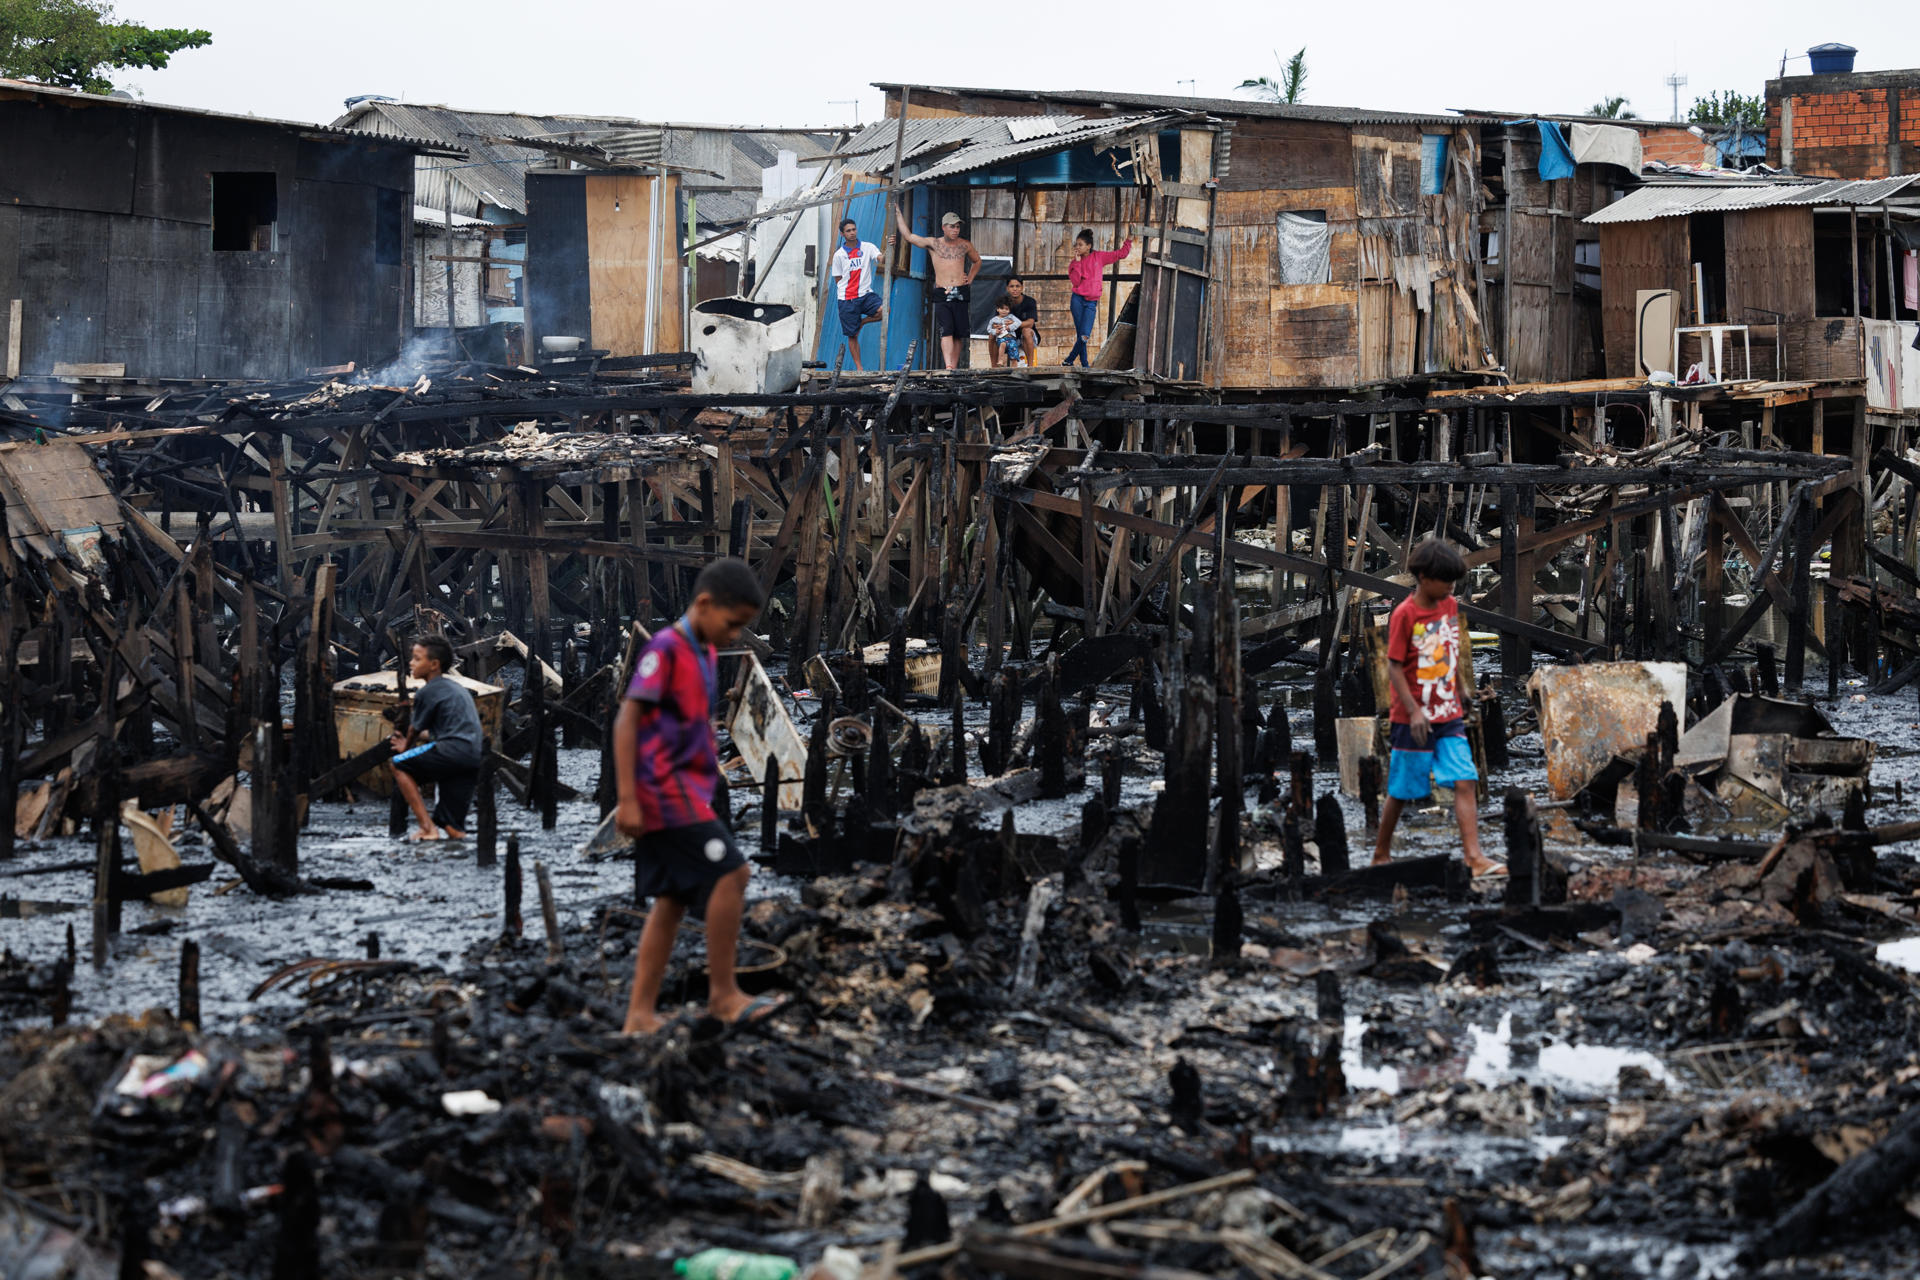 Personas observan los restos y buscan objetos tras un incendio de grandes proporciones que destruyó más de 100 viviendas de madera construidas sobre palafitas, hoy en Santos (Brasil). EFE/Isaac Fontana